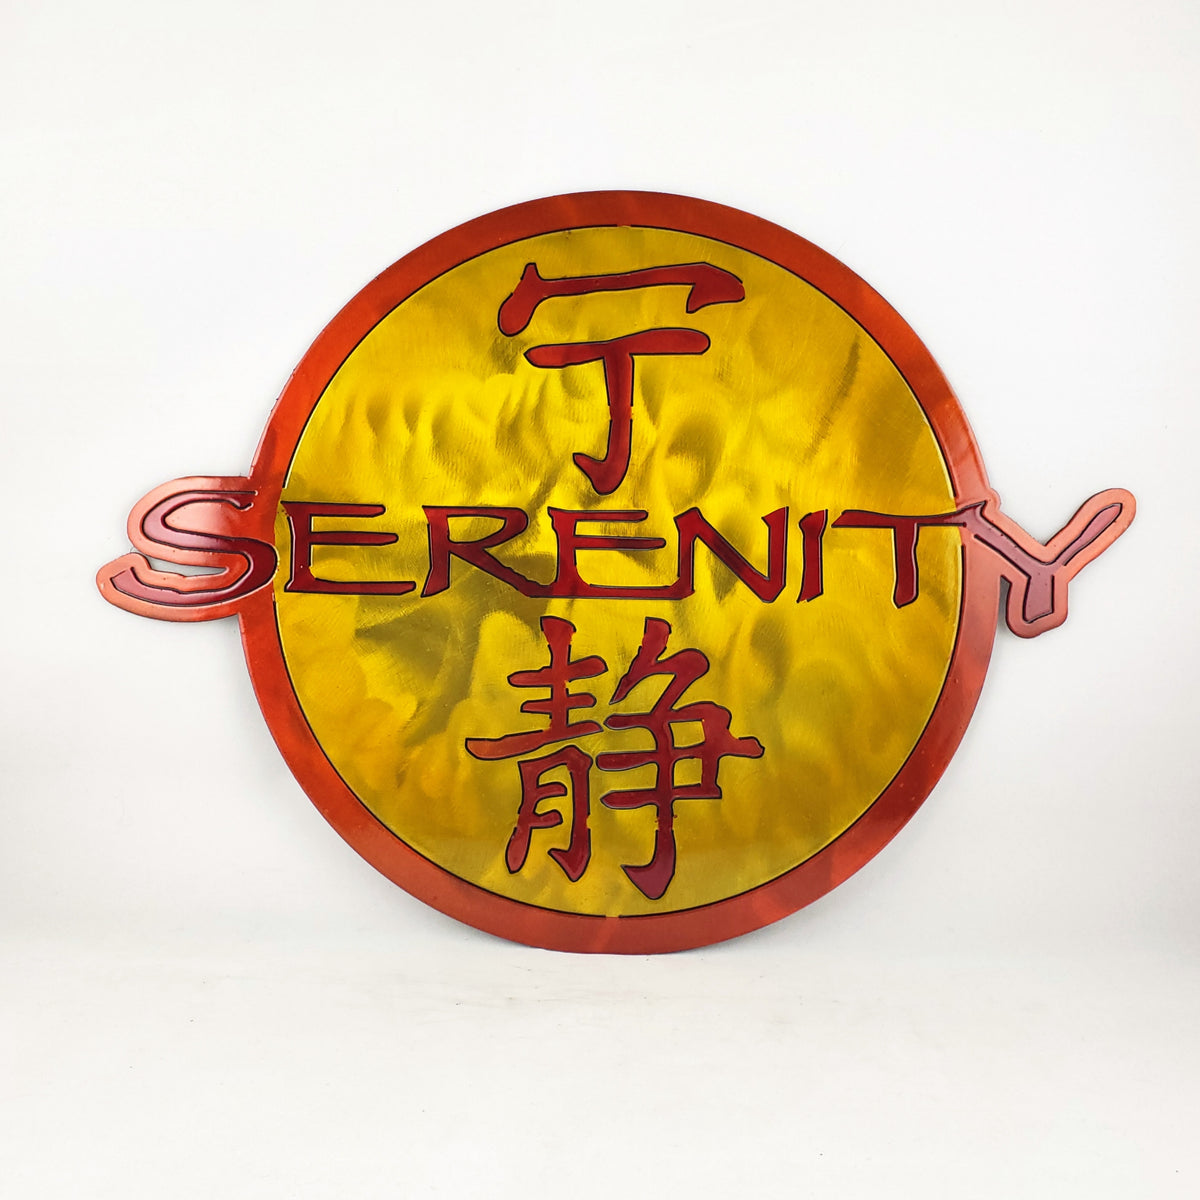 firefly serenity logo